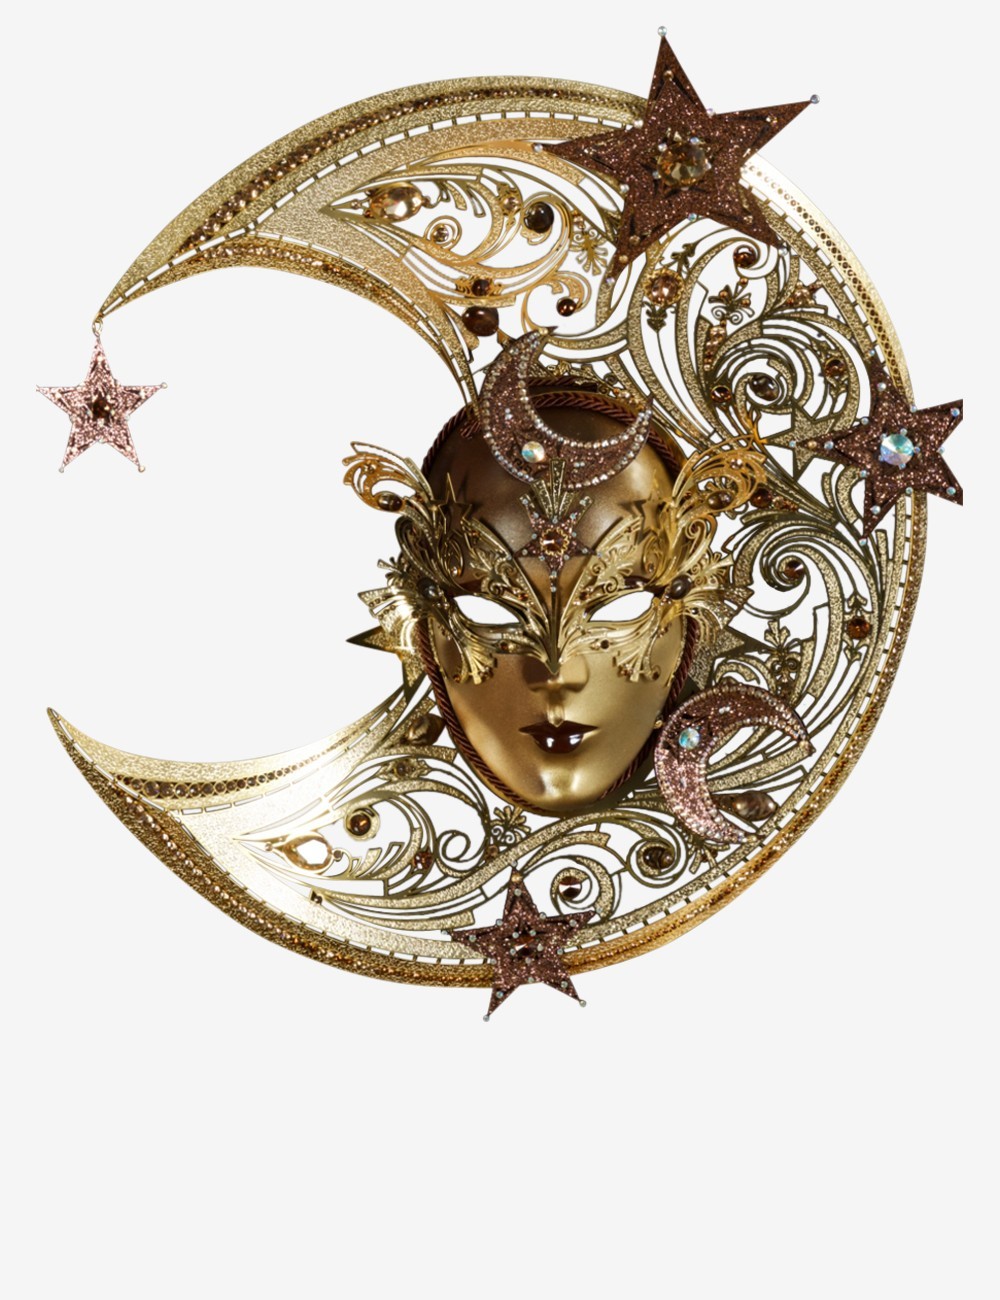 Celestial maschera veneziana in vendita